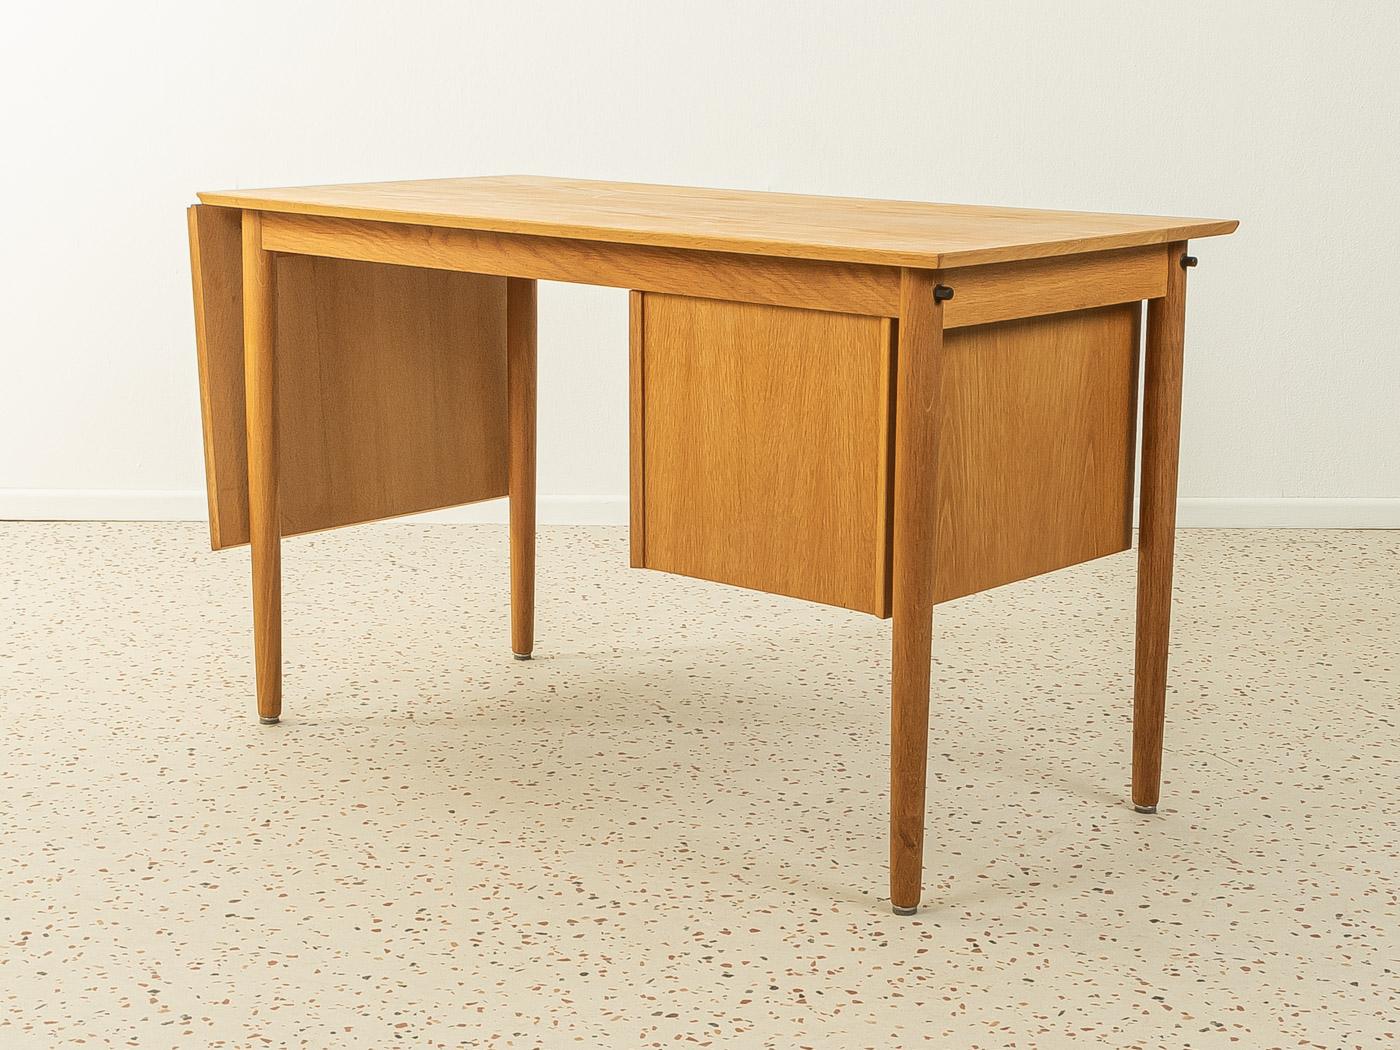 Danish Freestanding Desk from the 1960s by Arne Vodder for H. Sigh, Made in Denmark